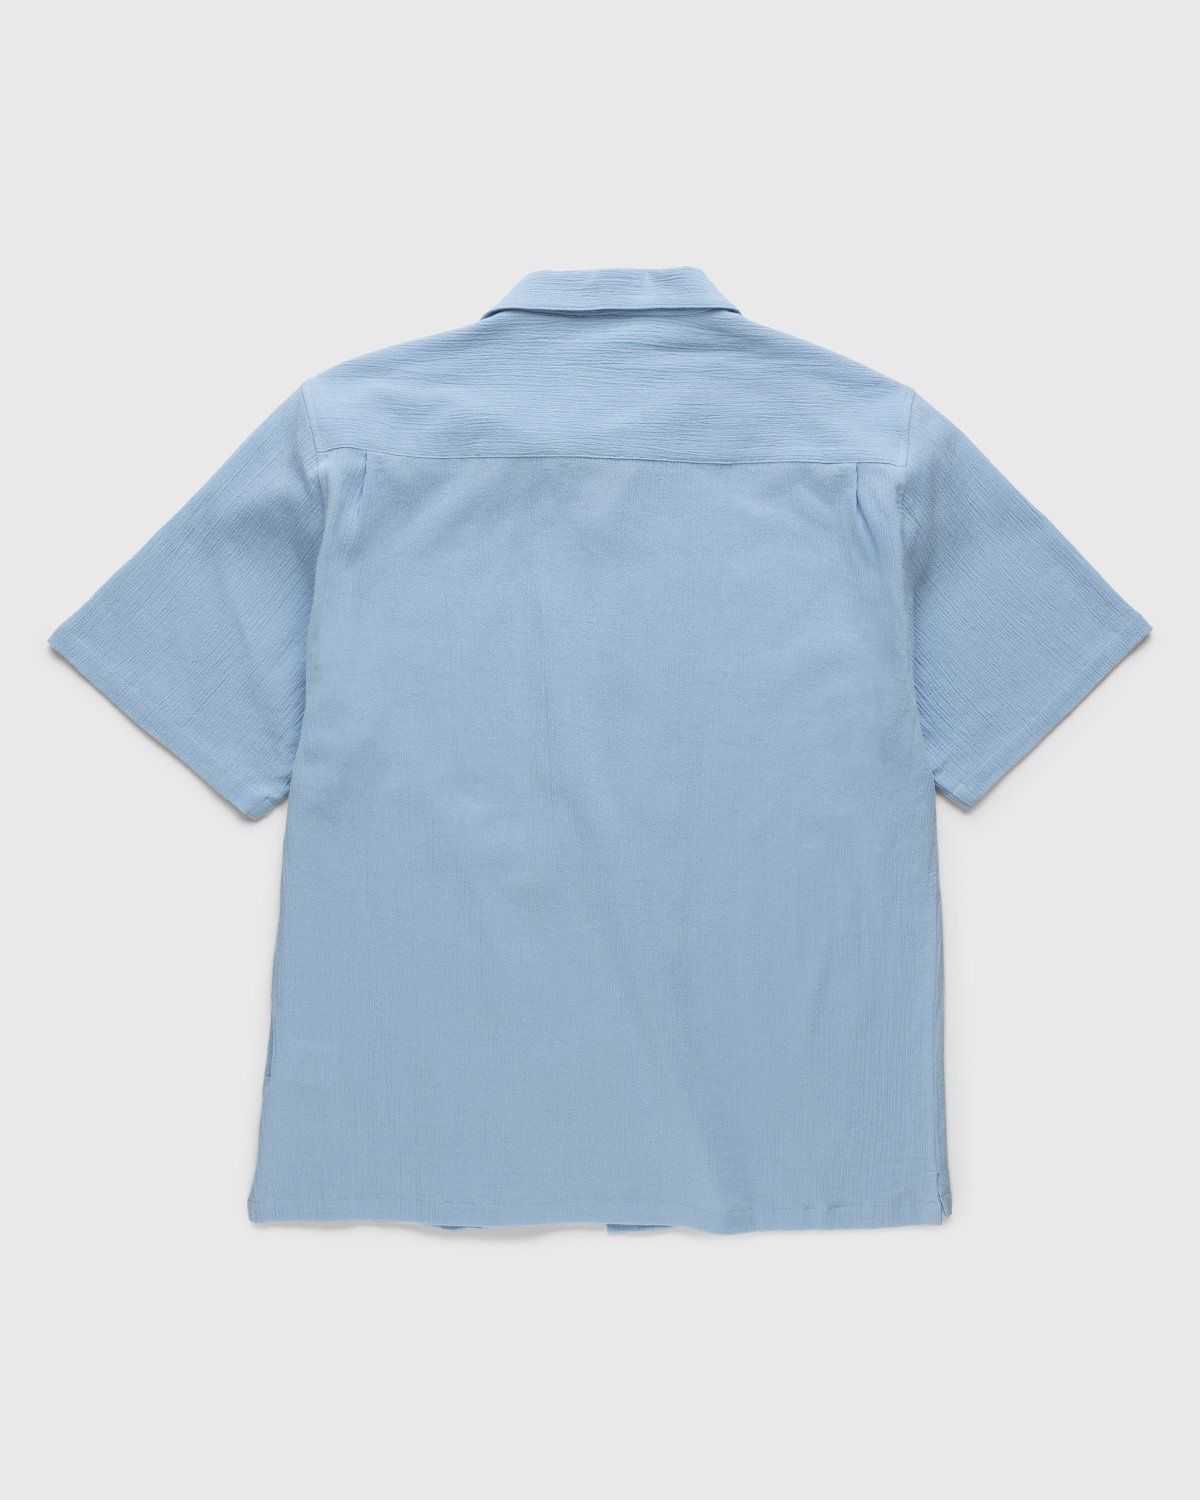 Highsnobiety – Crepe Short Sleeve Shirt Sky Blue - Shortsleeve Shirts - Blue - Image 2